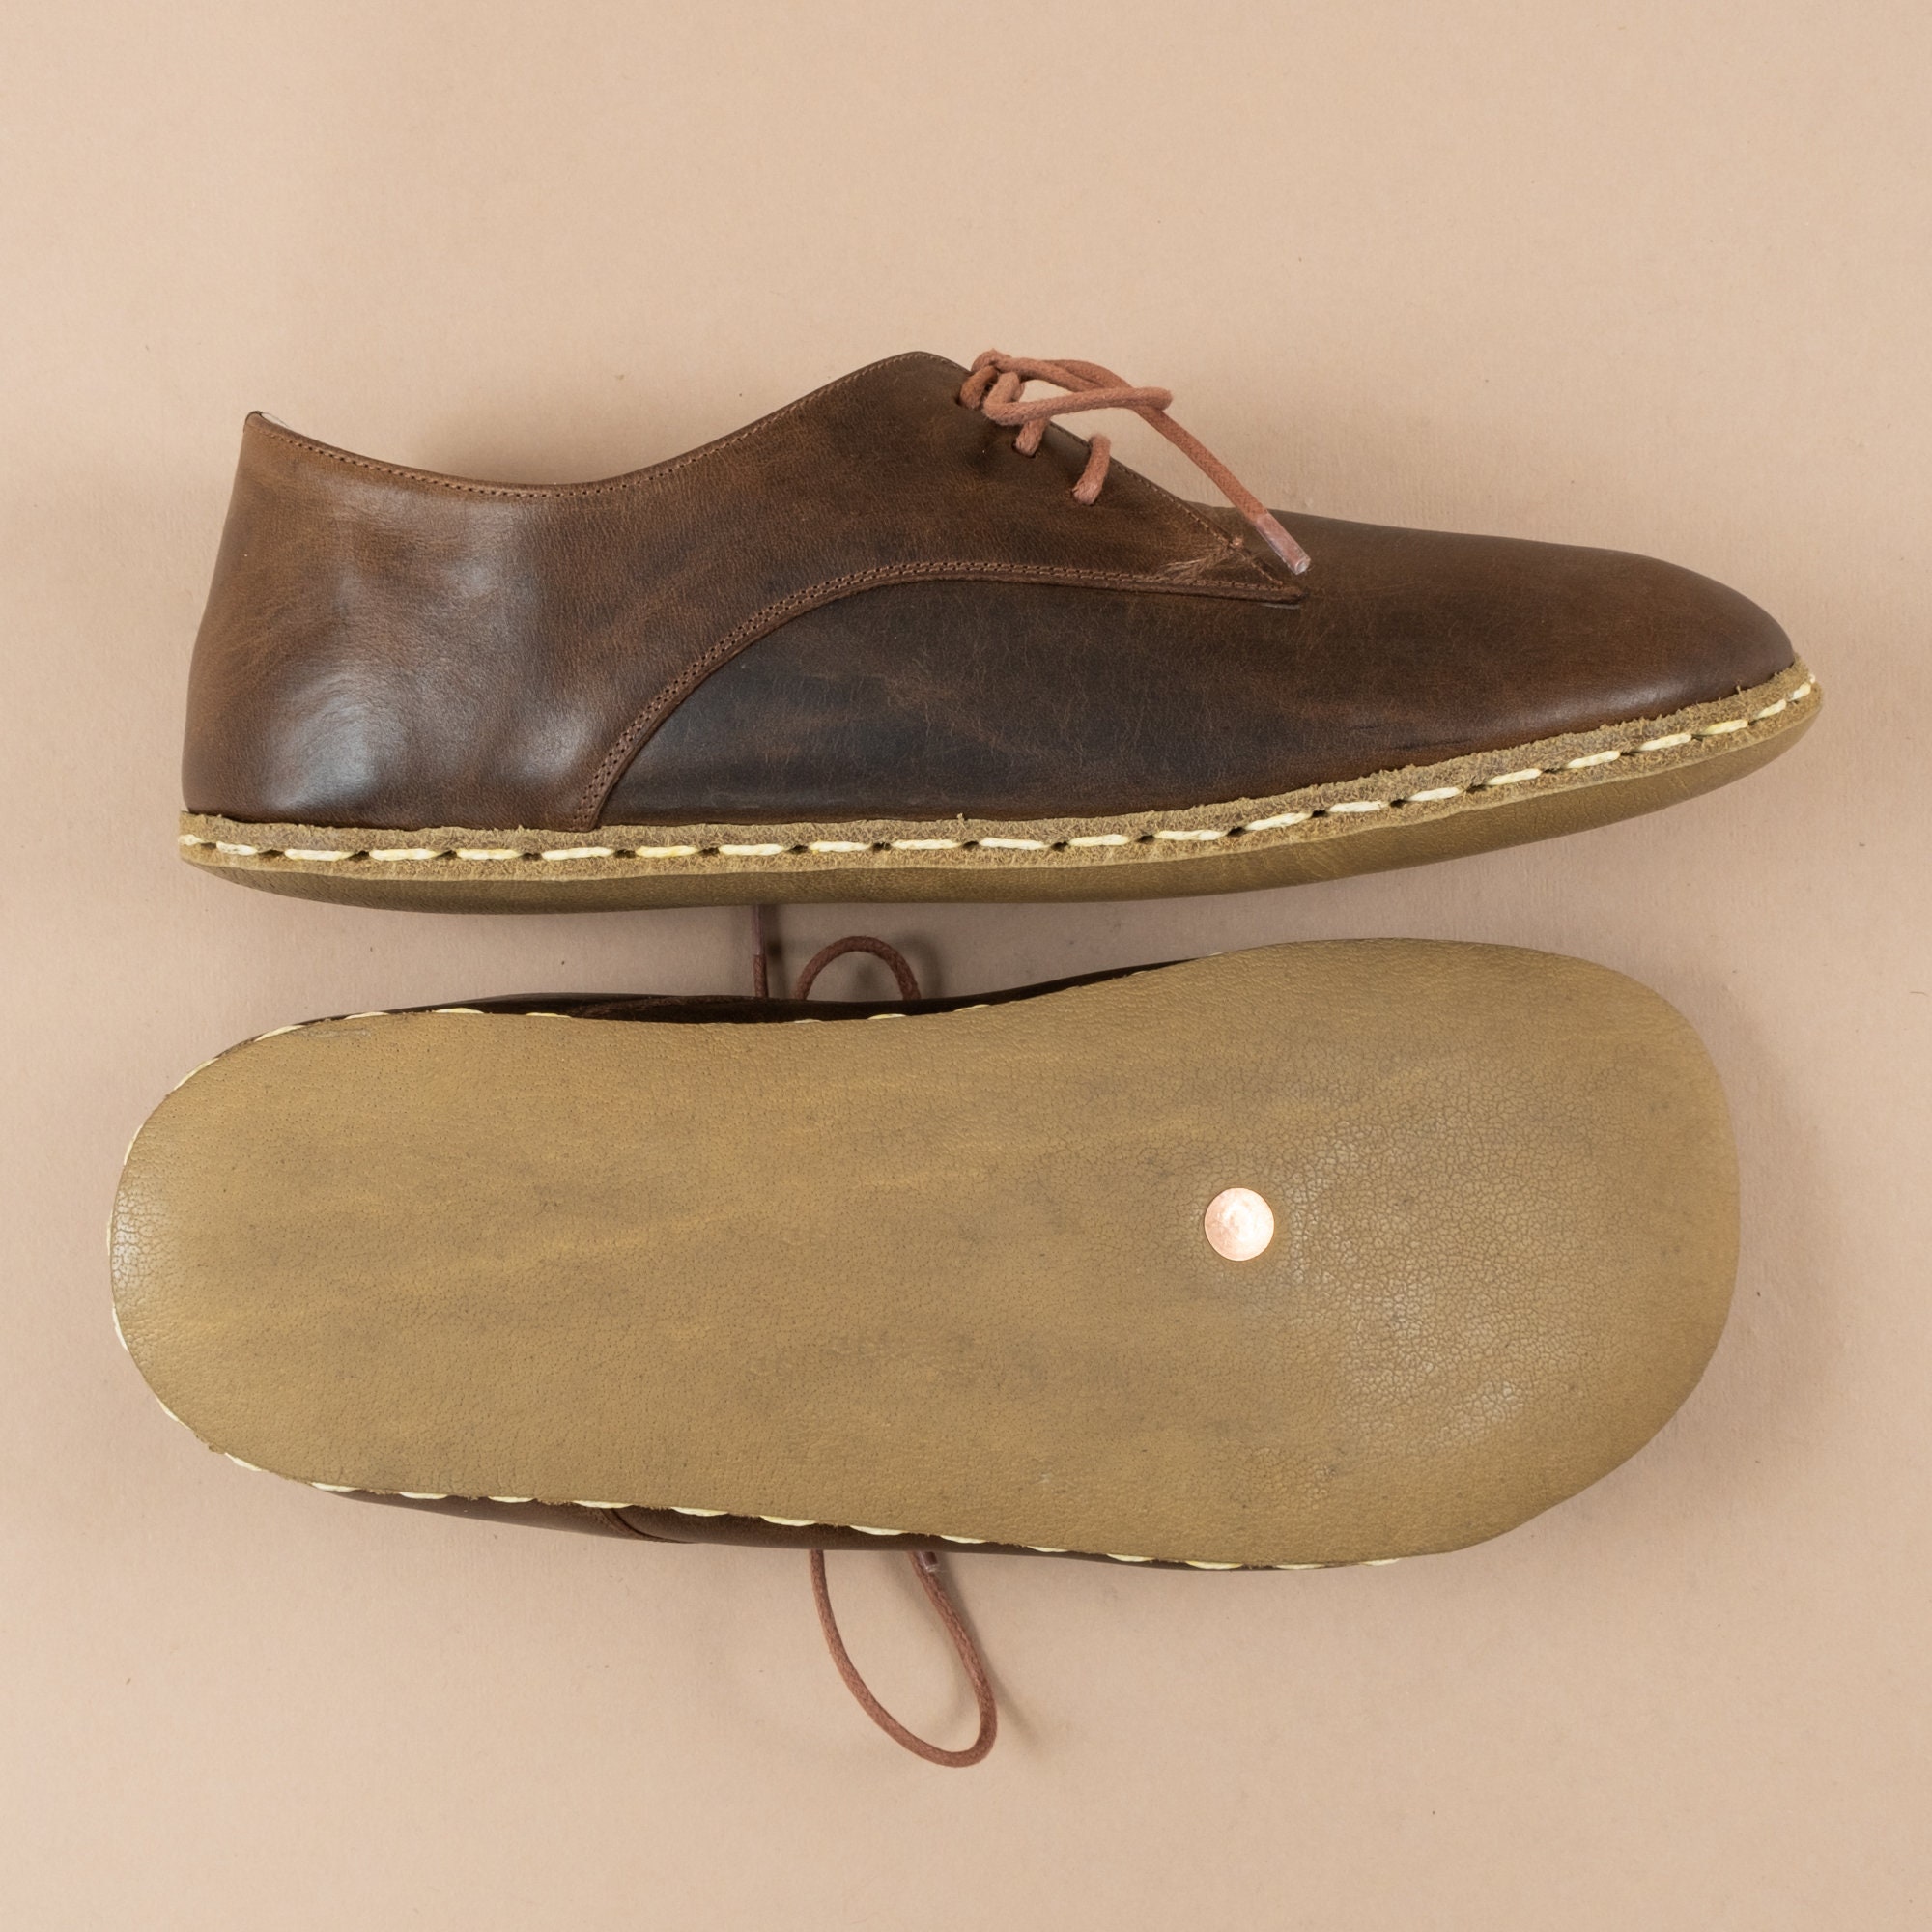 Scarpe Calzature uomo Sandali Naturale Slip-On Colorato Oxford Barefoot Pelle Rossa Fatta a Mano Uomo Classico Yemeni Scarpe 